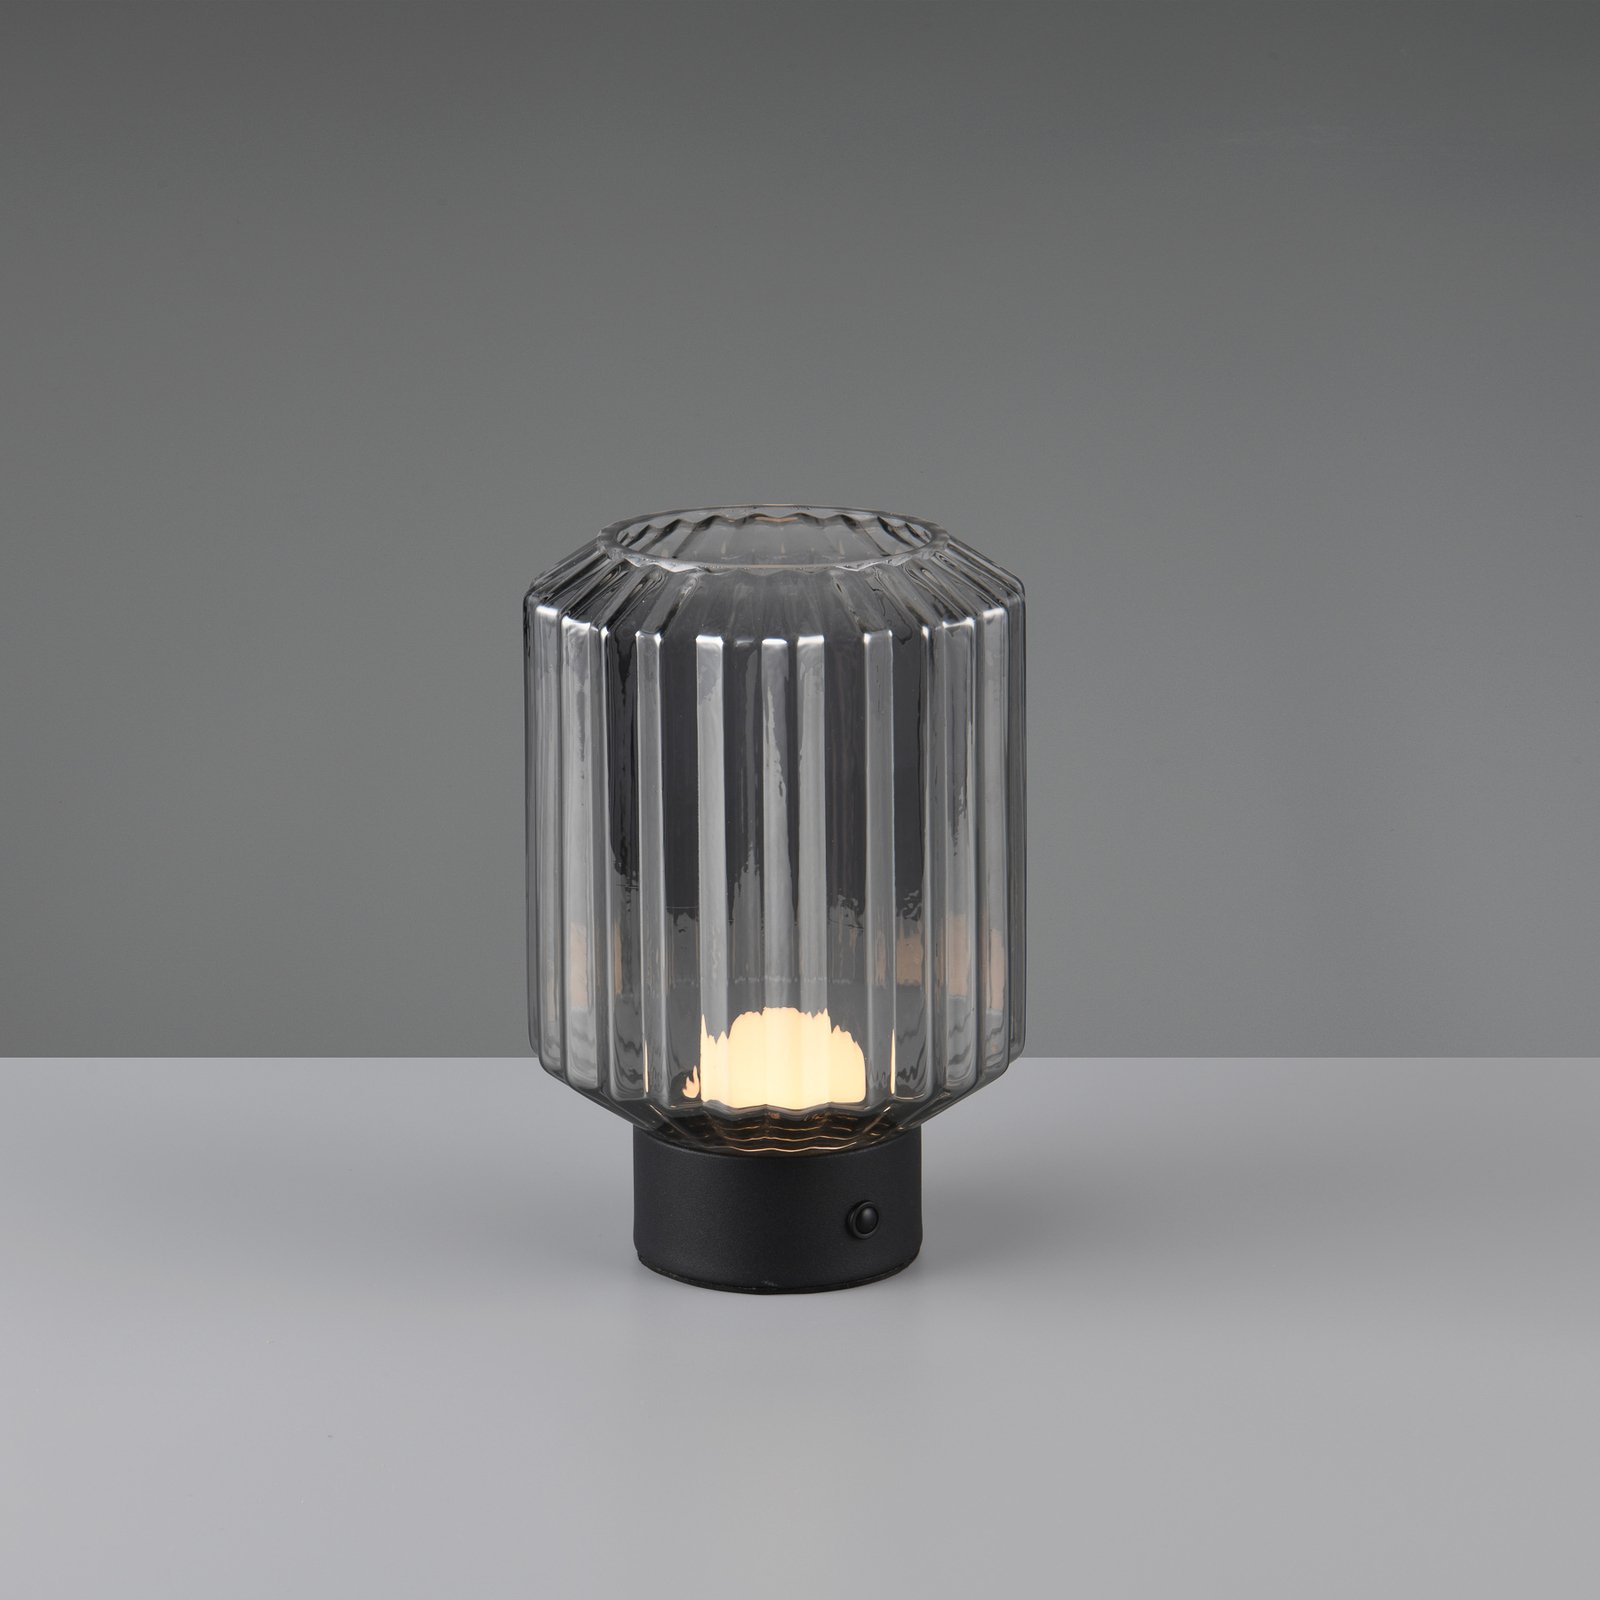 Lord LED oppladbar bordlampe, svart/røyk, høyde 19,5 cm, glass